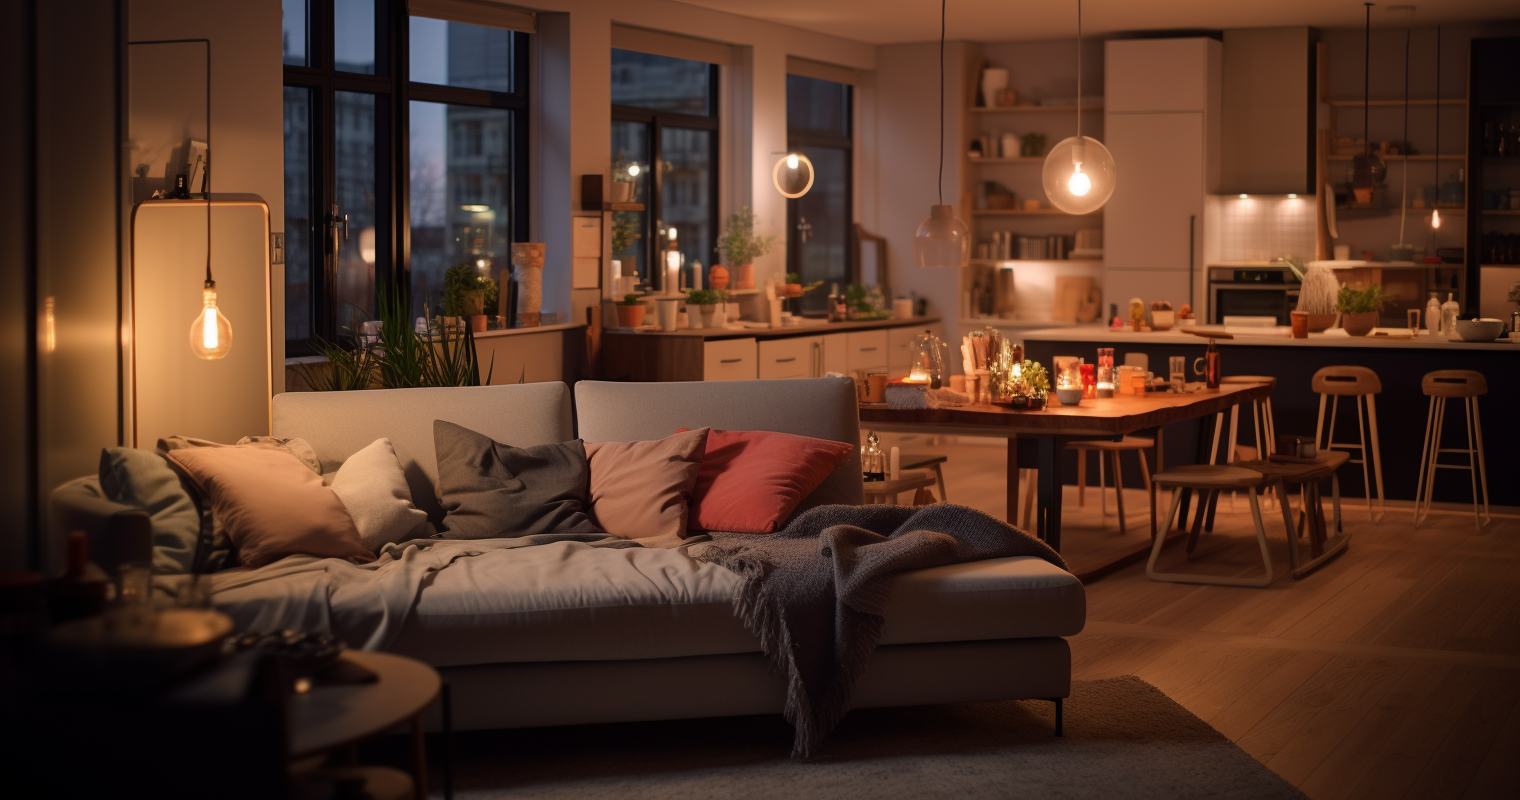 Lighting Magic in Apartment Design